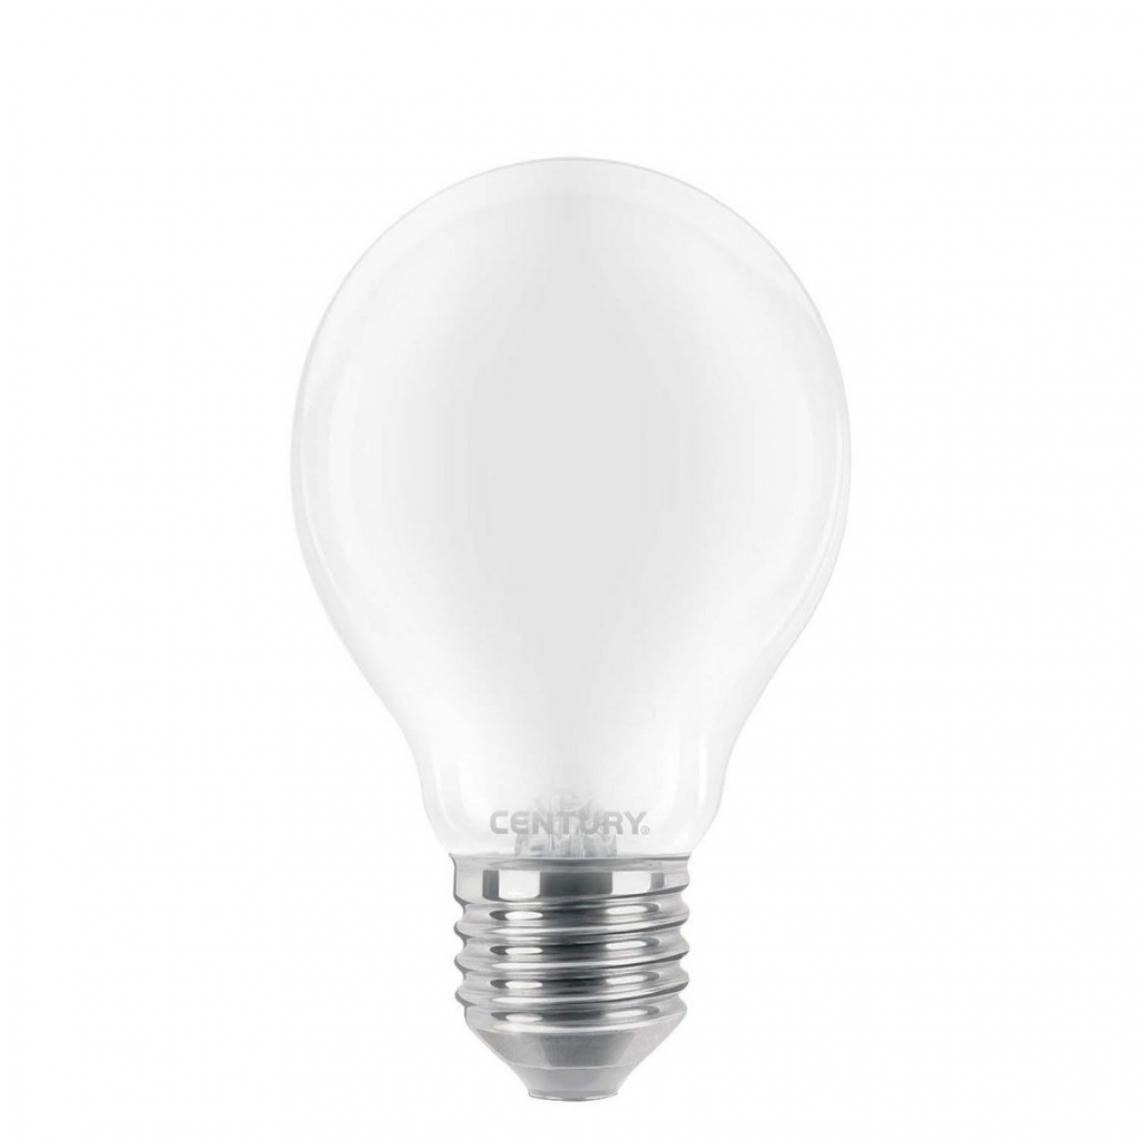 Alpexe - Ampoule LED E27 10 W 1521 lm 3000 K - Ampoules LED